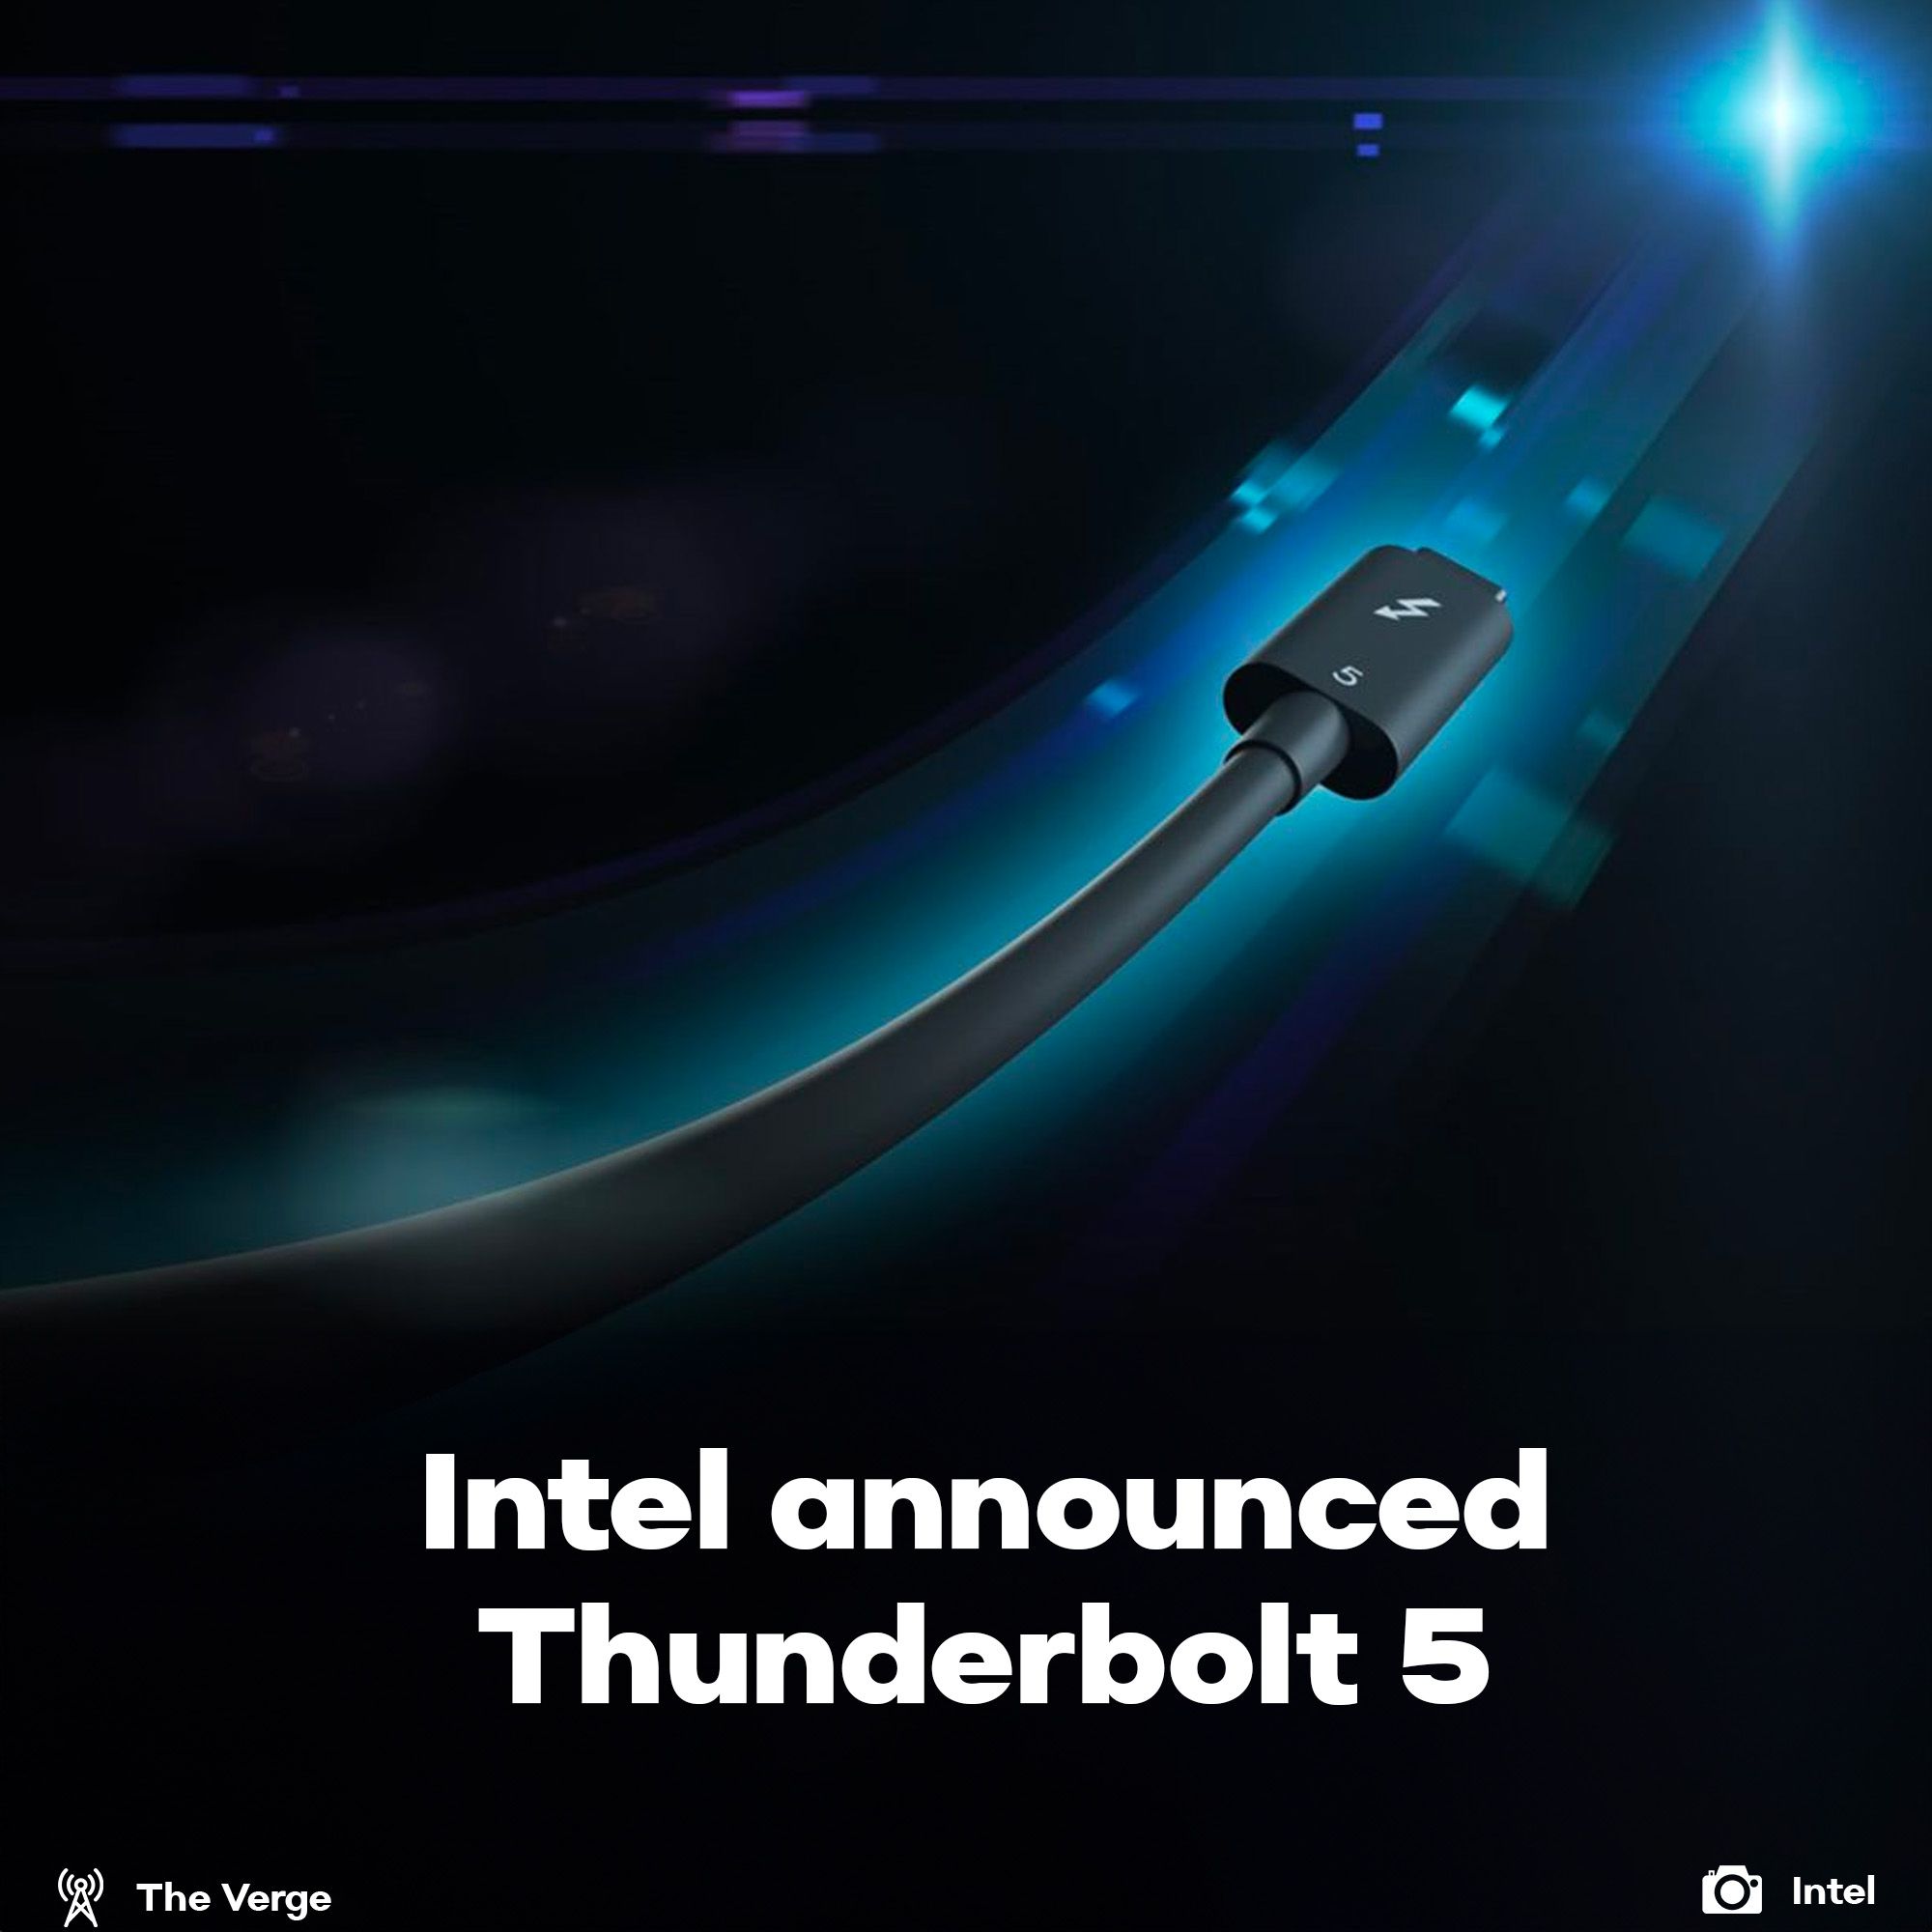 Thunderbolt5 announced